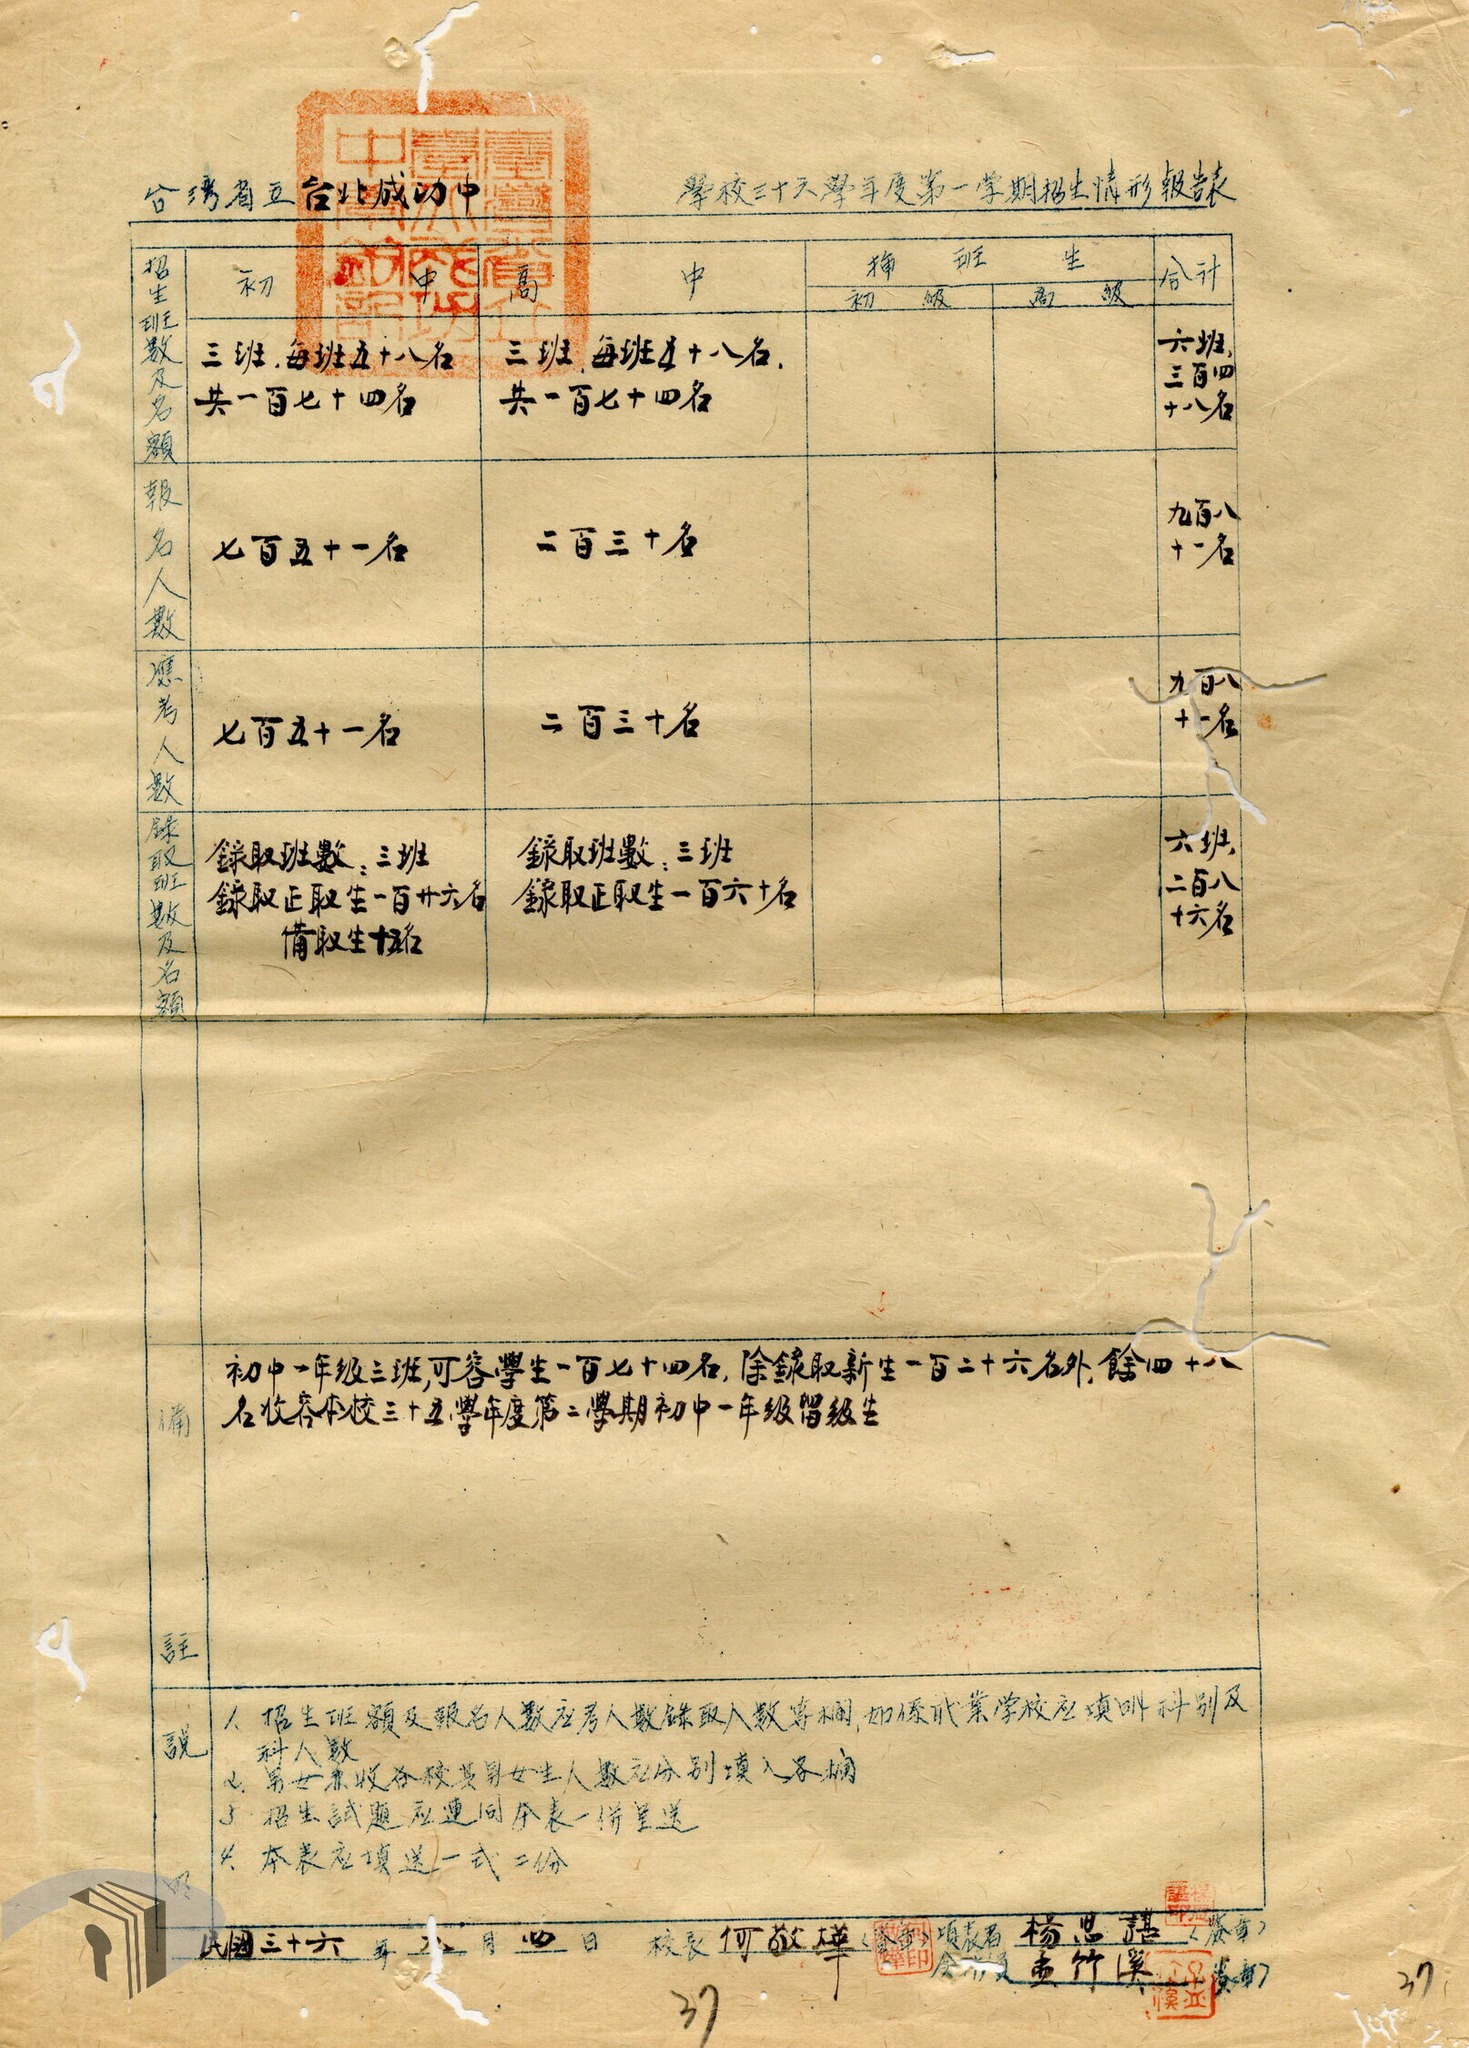 1. 1947年成功中學招生情形報告表